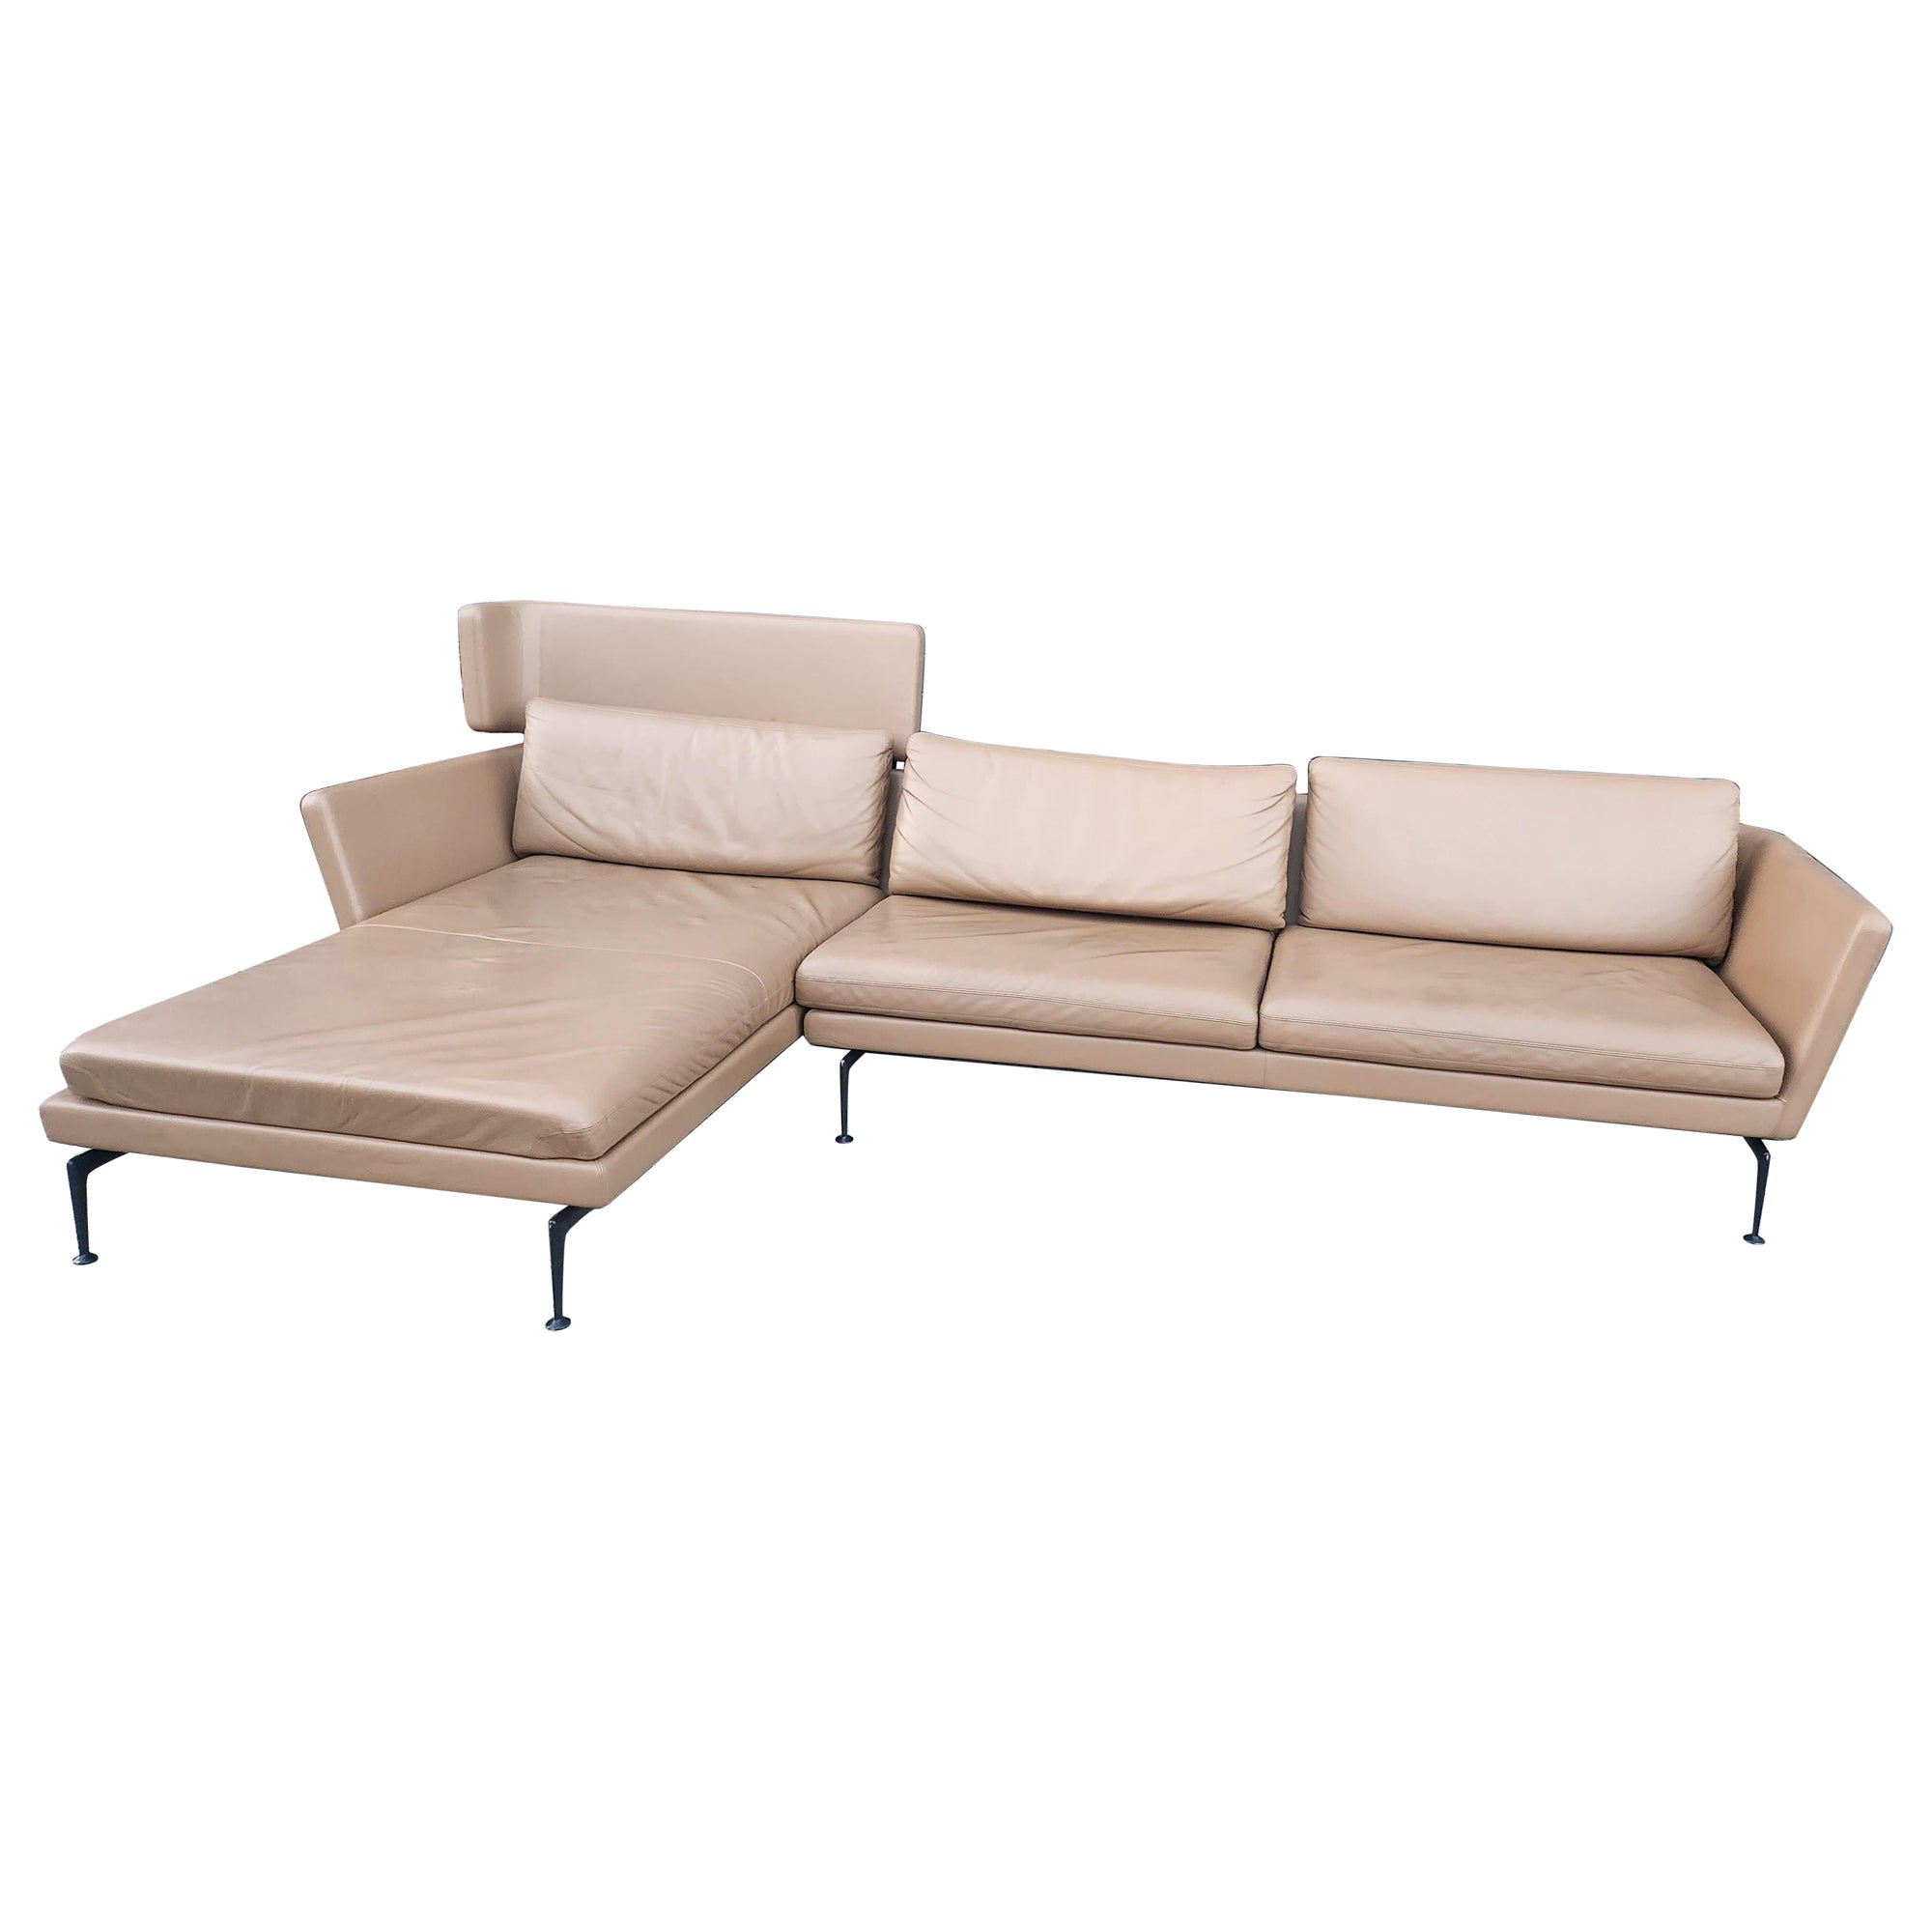 Vitra - Suita Sofa by Antonio Citterio - Camel Premium F Leather